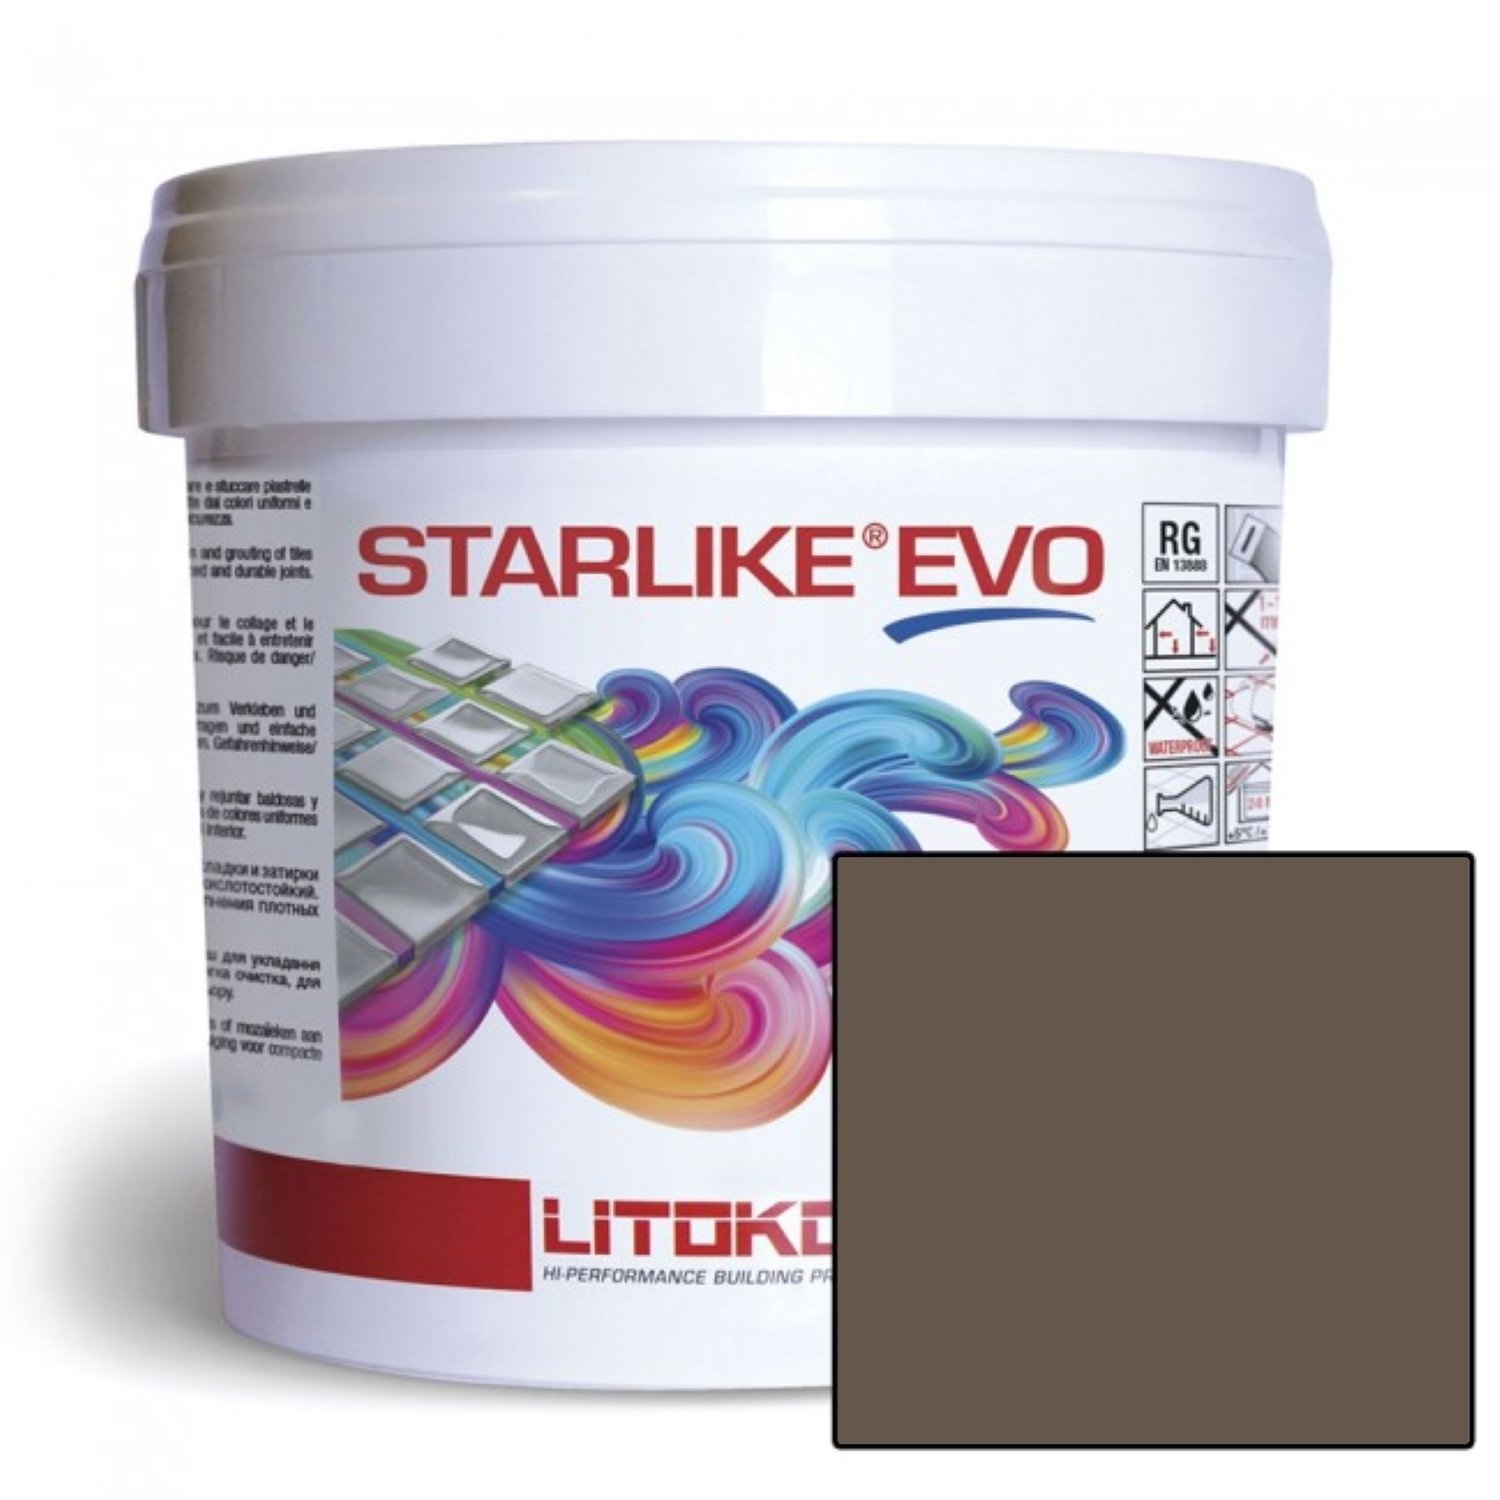 Starlike Voegmiddel 2 Componenten Epoxy 2,5 kg Evo 235 Caffe Koffie Starlike